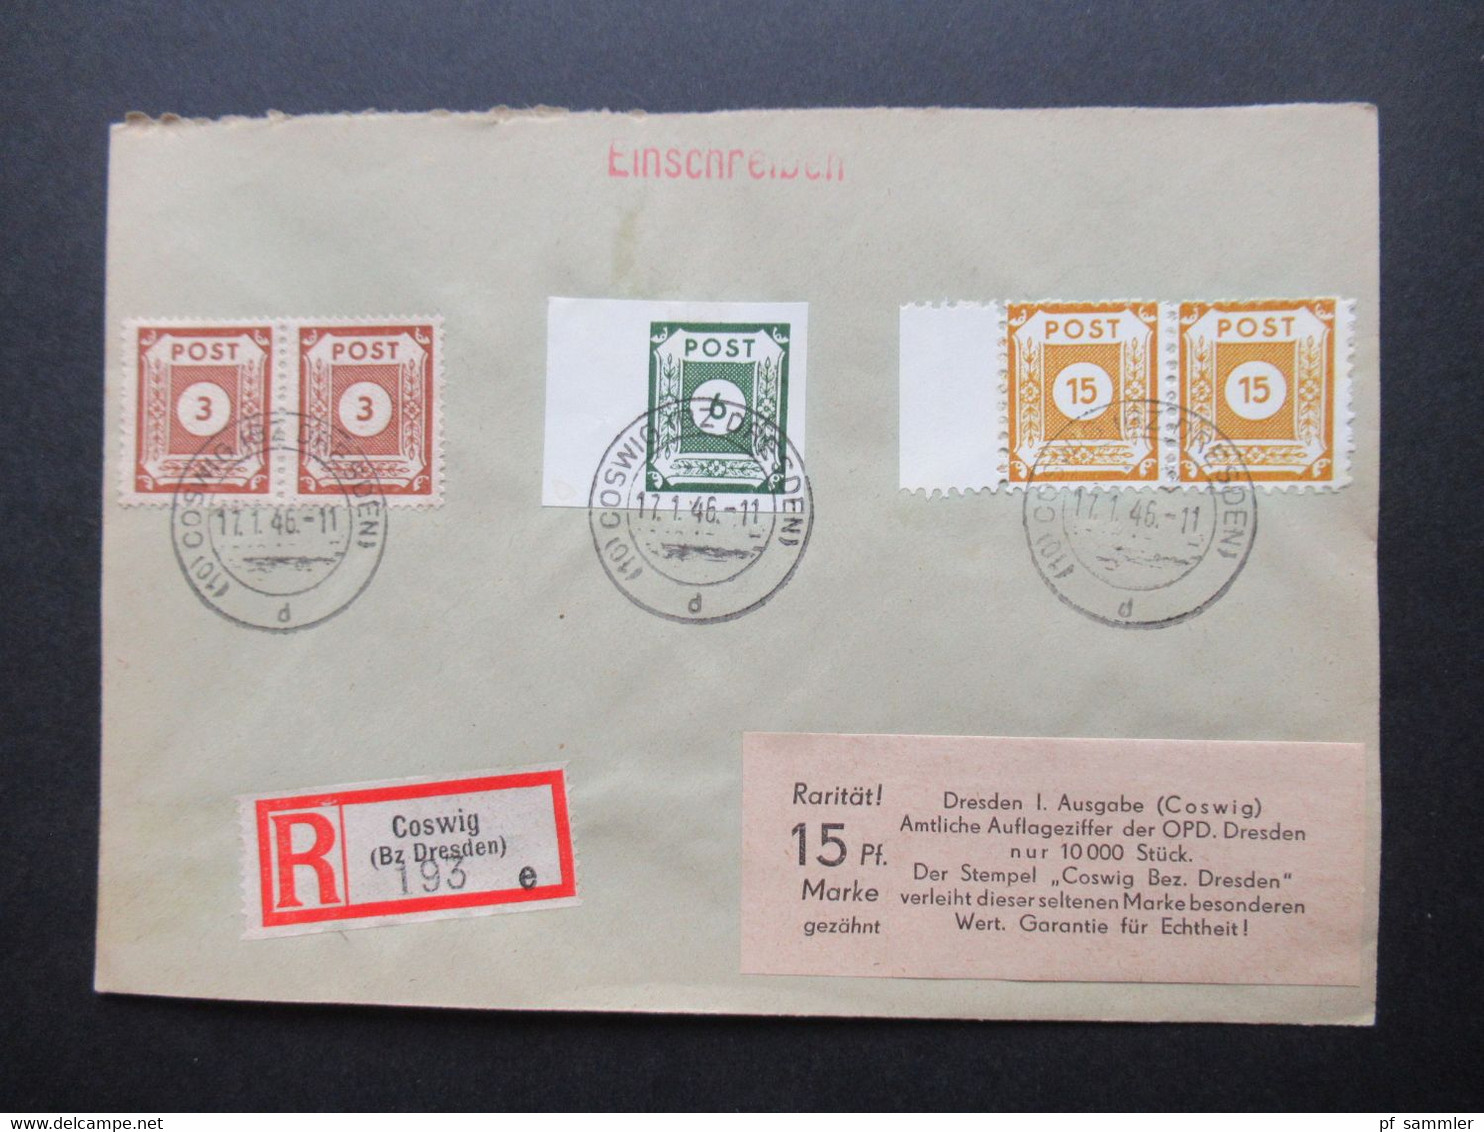 Belegeposten 1945 / 46 SBZ 95 Kempe Briefe Postmeistertrennungen / Randstücke / Besonderheiten mit original Slg. Heften